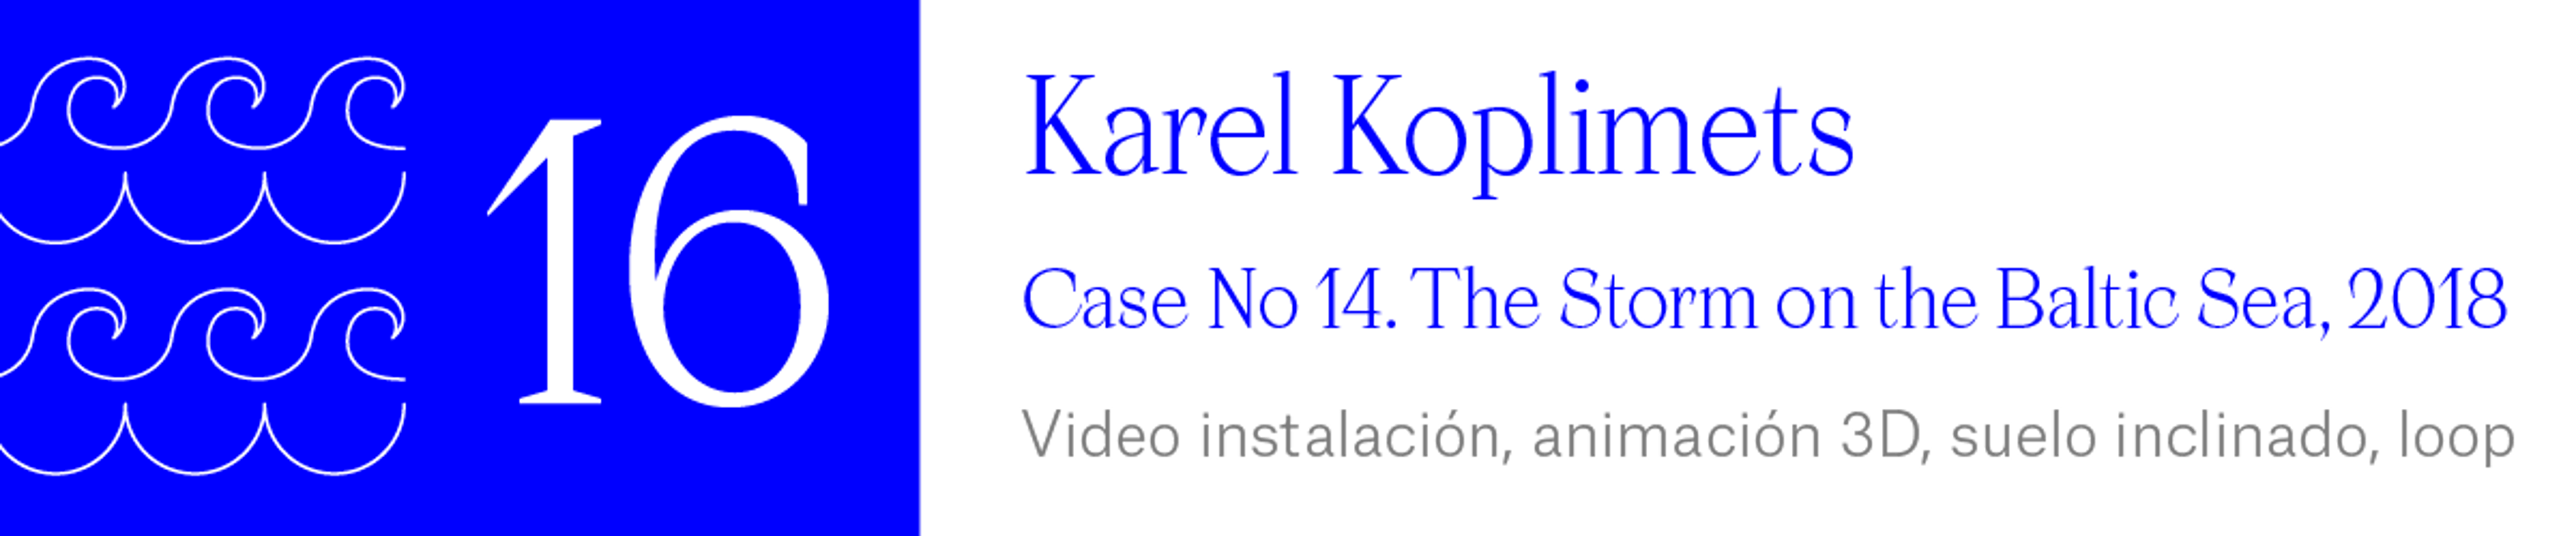 The Wave (16) Karel Koplimets - Case No 14. The Storm on the Baltic Sea, 2018 Video instalación, animación 3D, suelo inclinado, loop